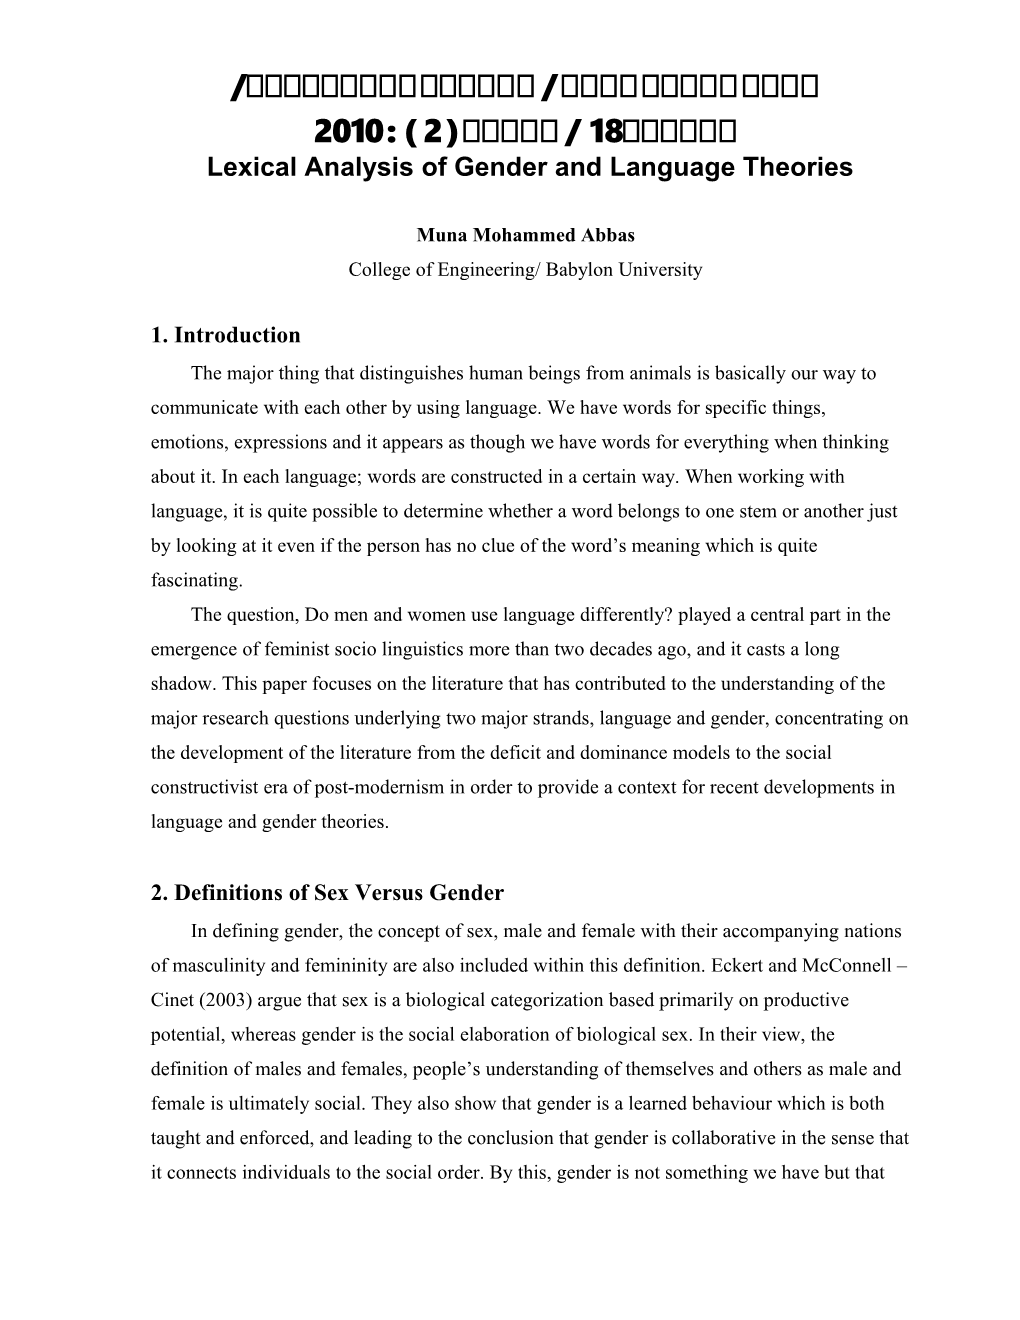 Language and Gender in Feminist Linguistics